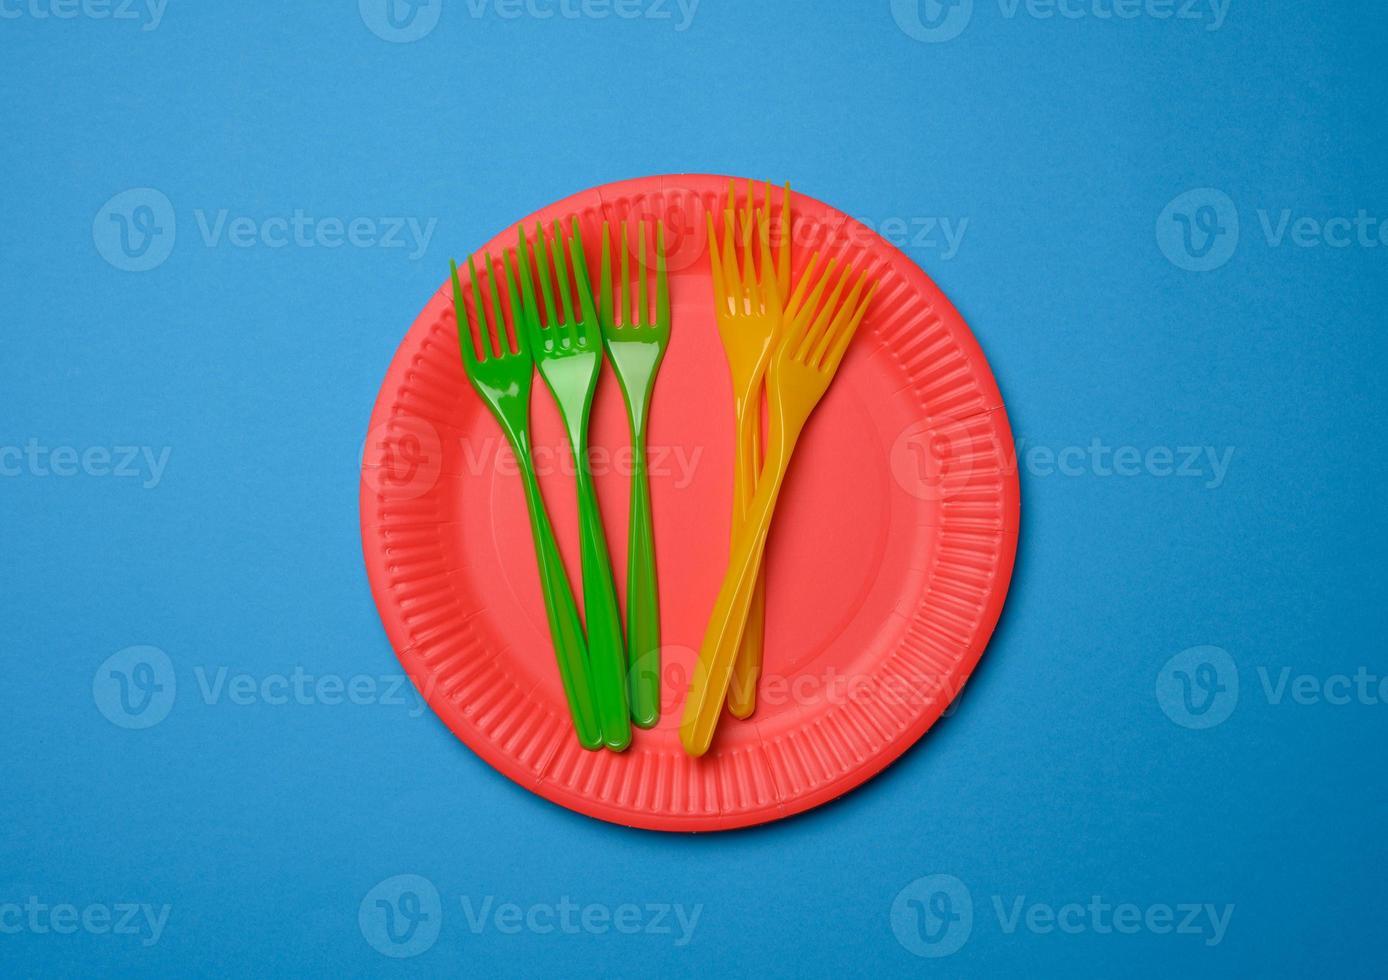 tenedores de plástico verde, naranja y platos desechables de papel rojo vacíos sobre un fondo azul foto